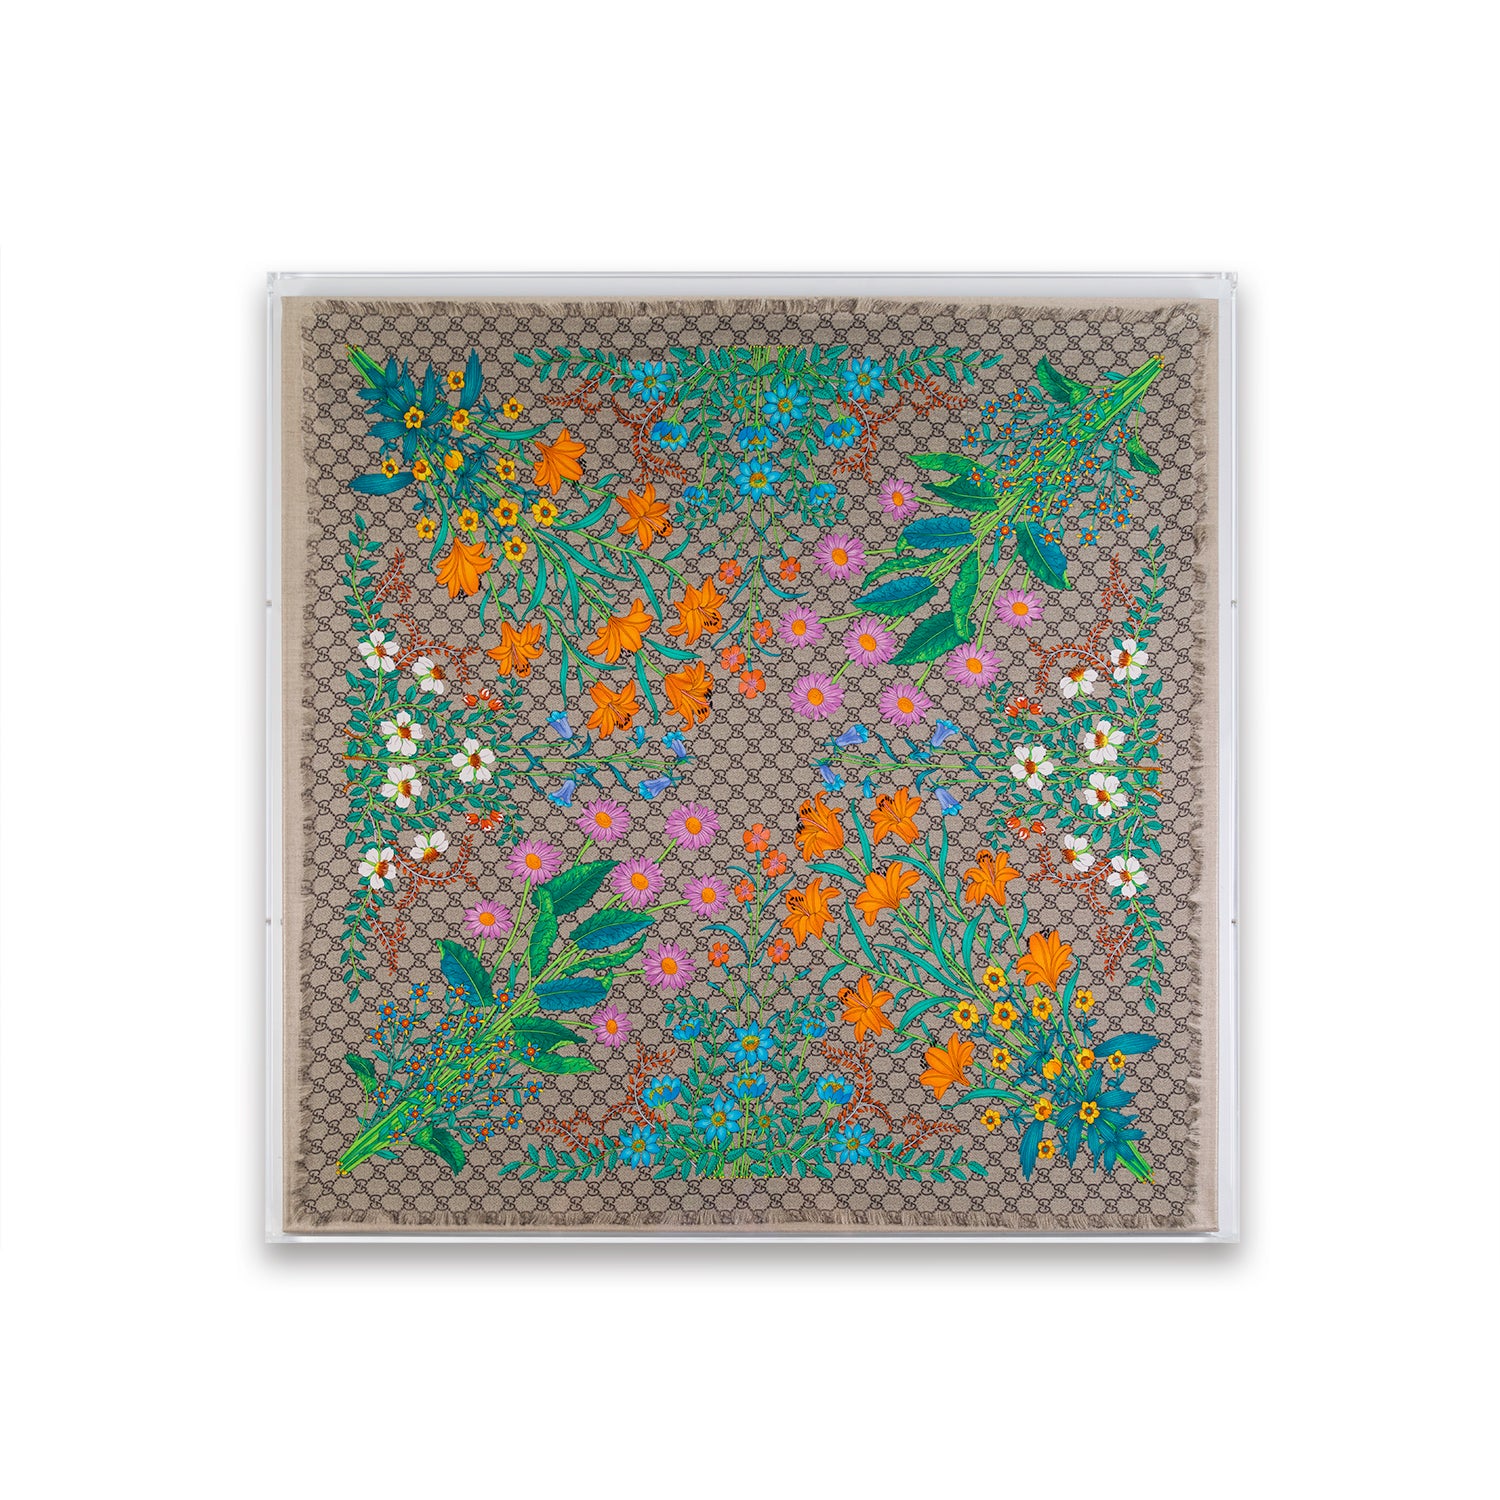 Framed Gucci Silk Flora Print Scarf in a 36x36x2" Shadowbox